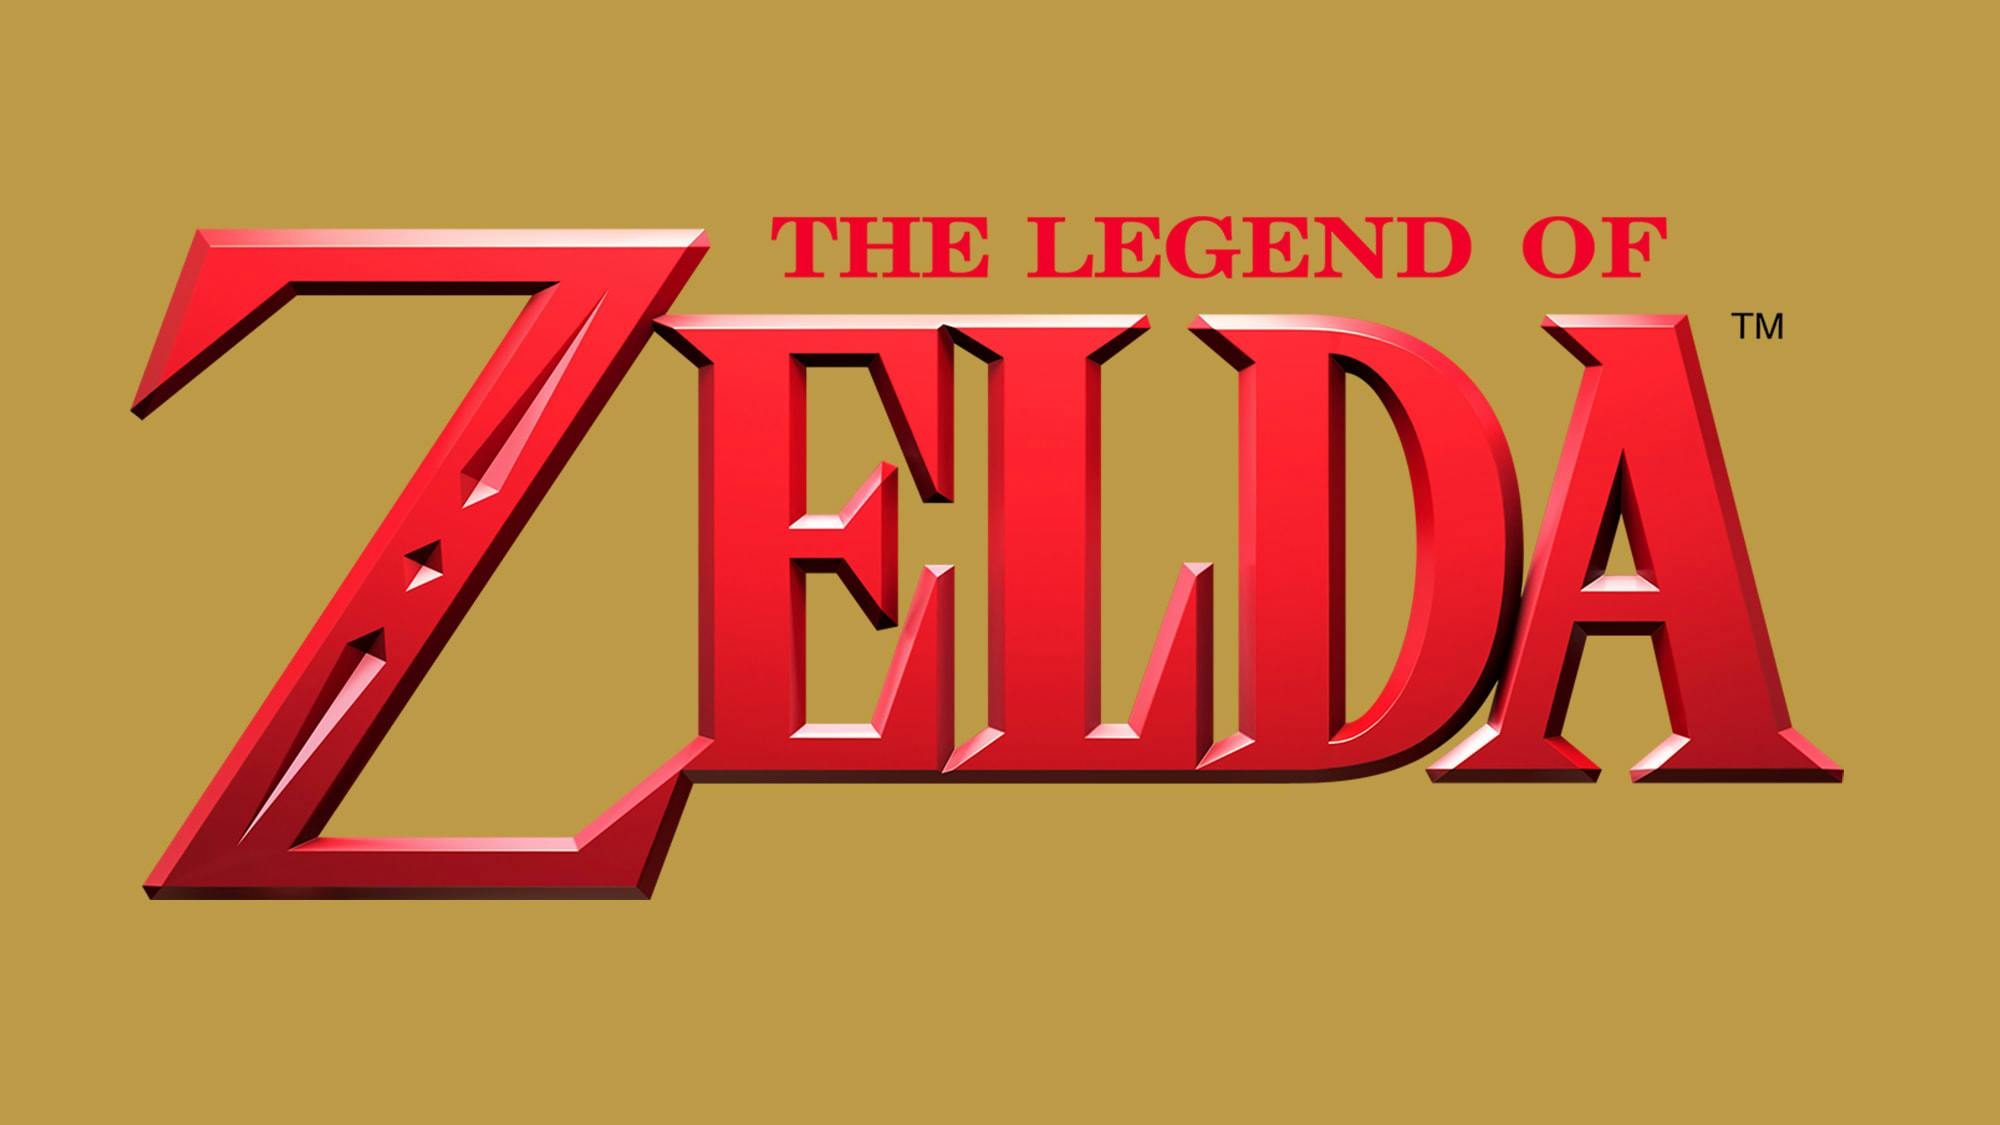 The Legend of Zelda Games